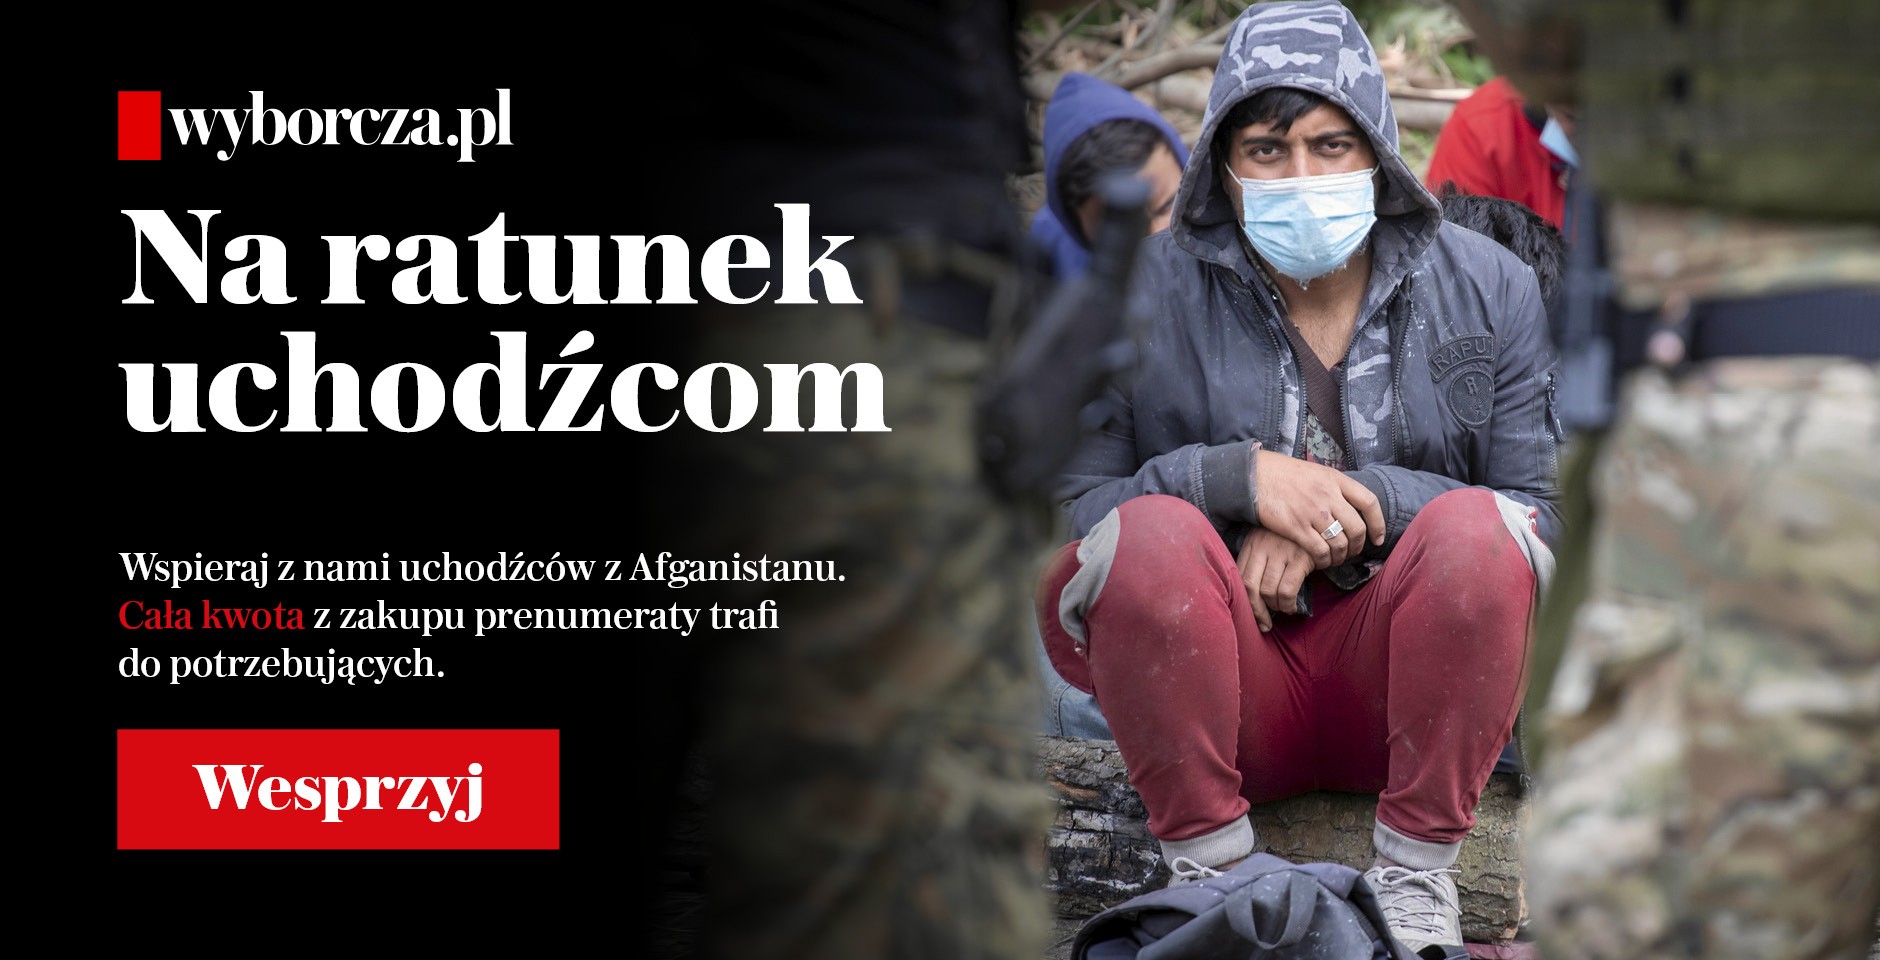 Wyborcza.pl uruchamia prenumeratę solidarnościową „Na ratunek uchodźcom”